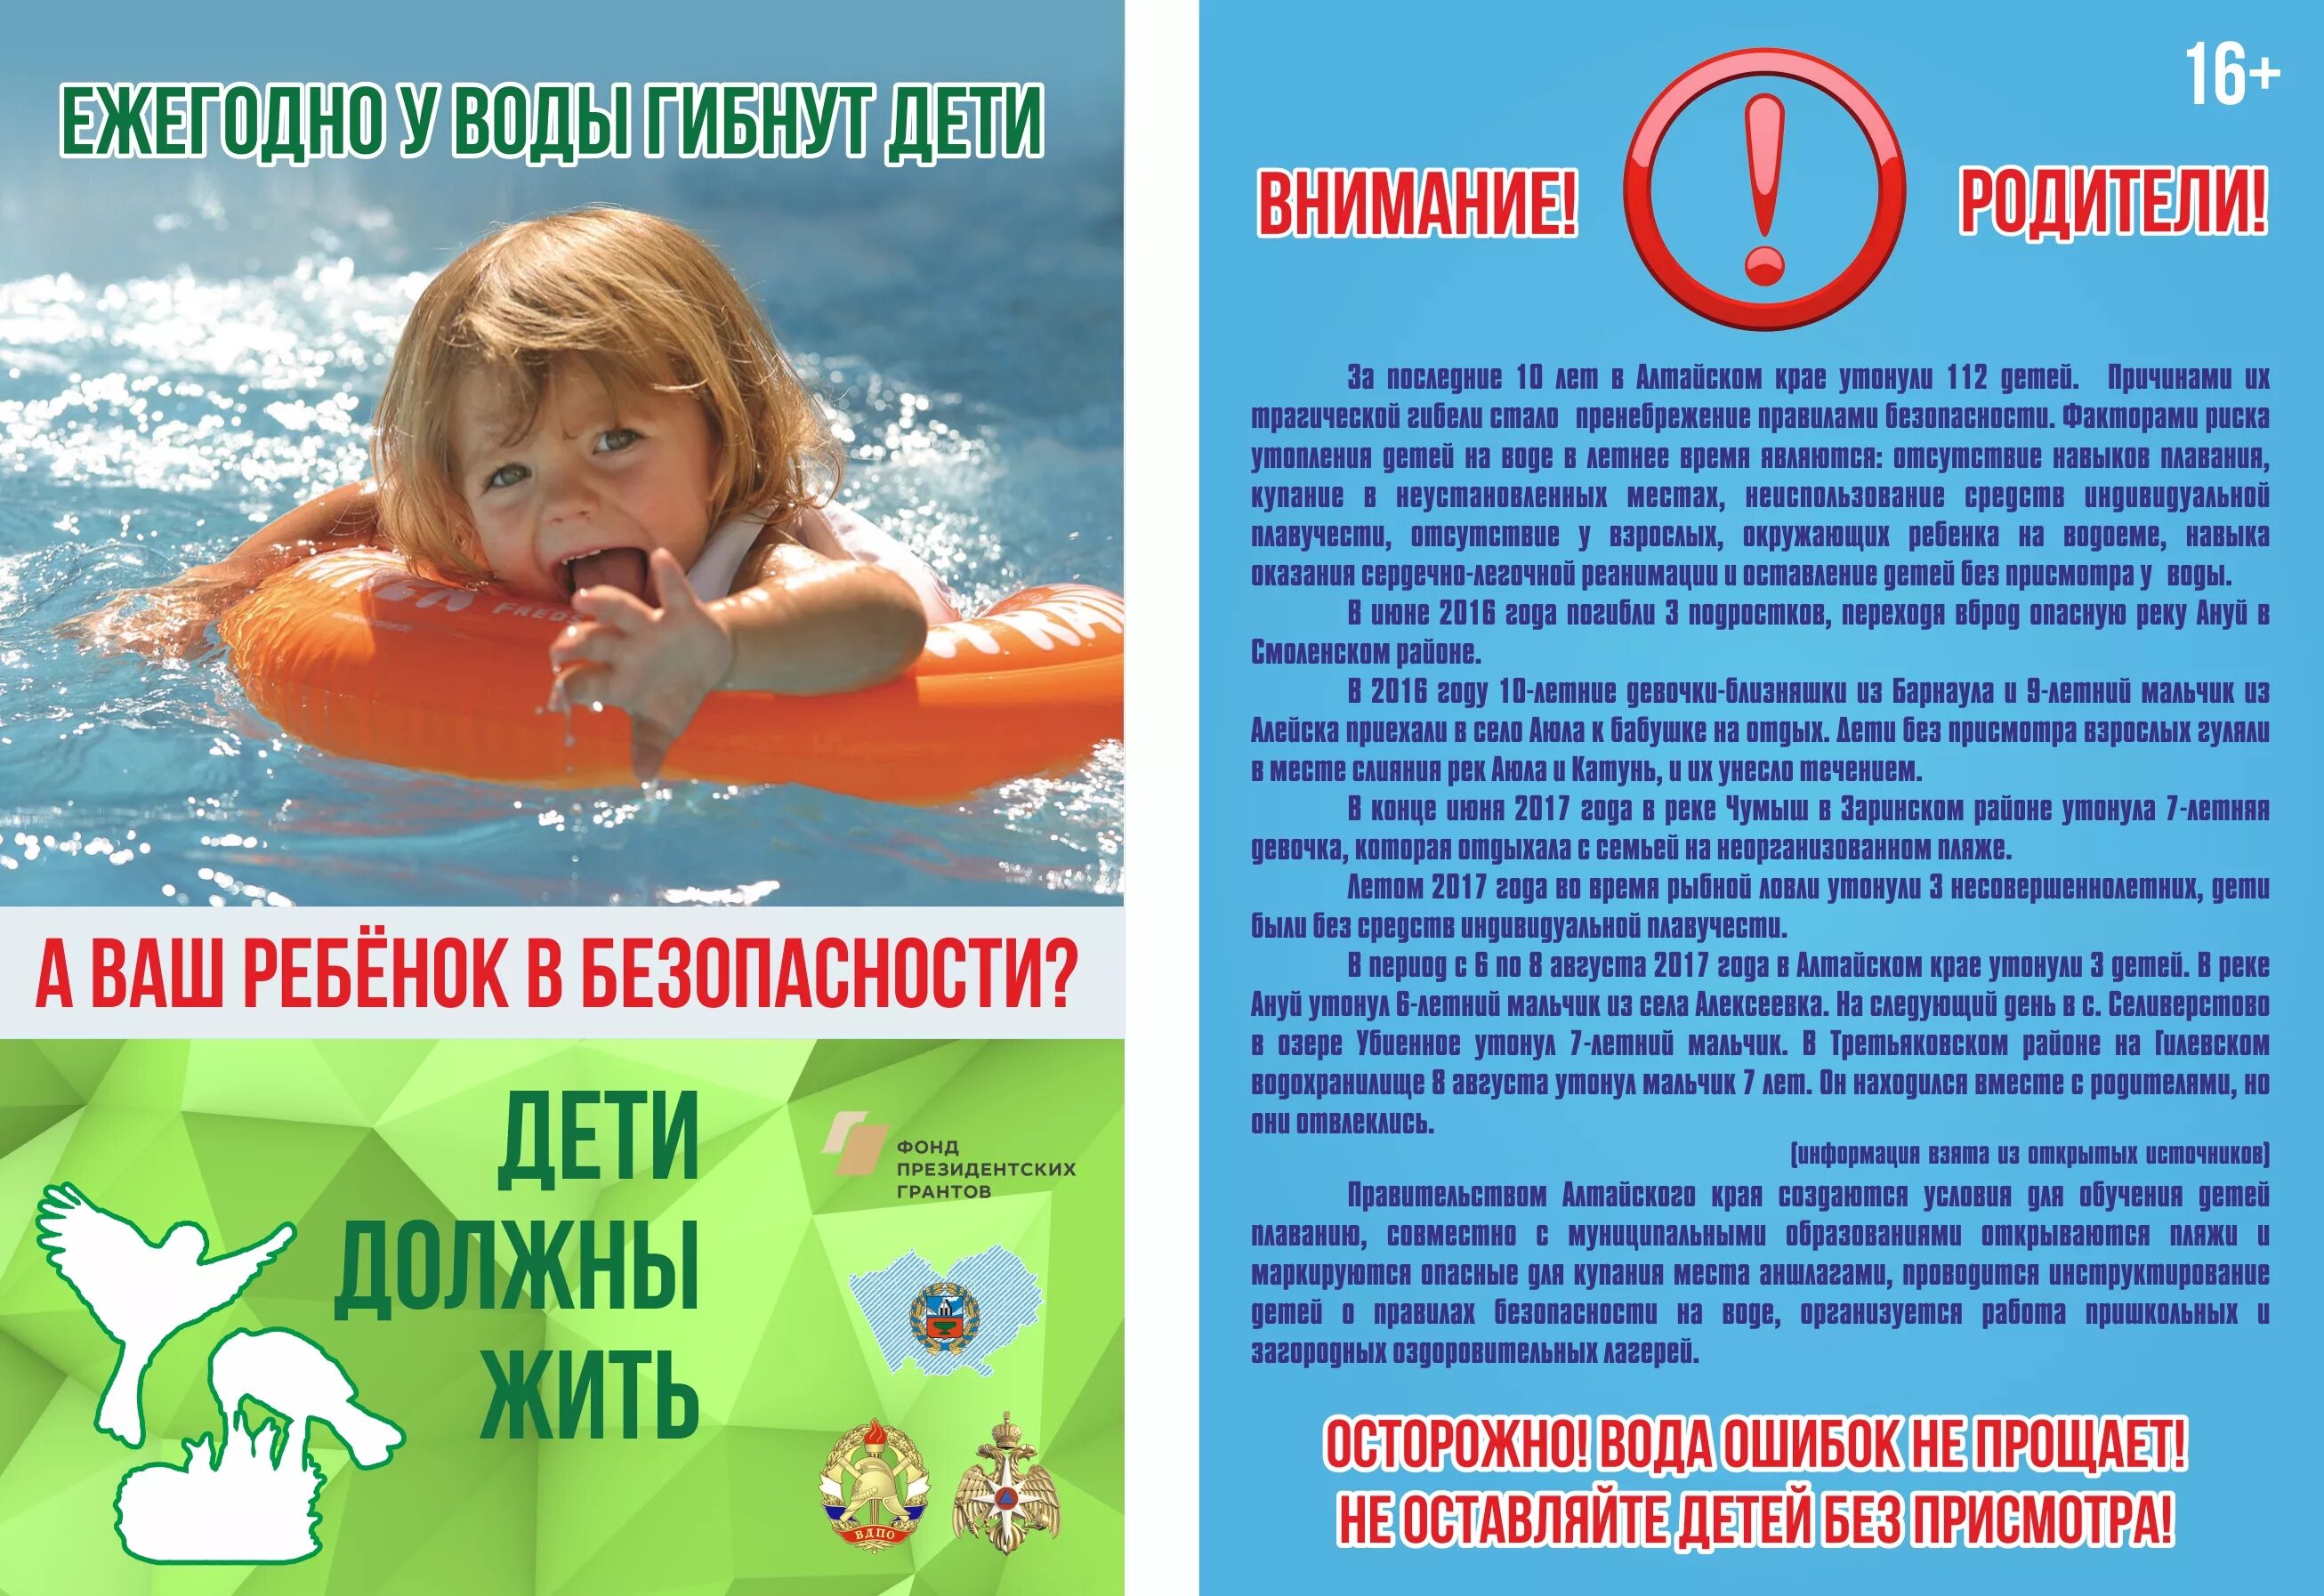 Безопасность на водоемах летом для детей. Безопасность на вордоемахдля детей. Безопасность на воде для детей. Безопасность детей на водоемах в летний период.